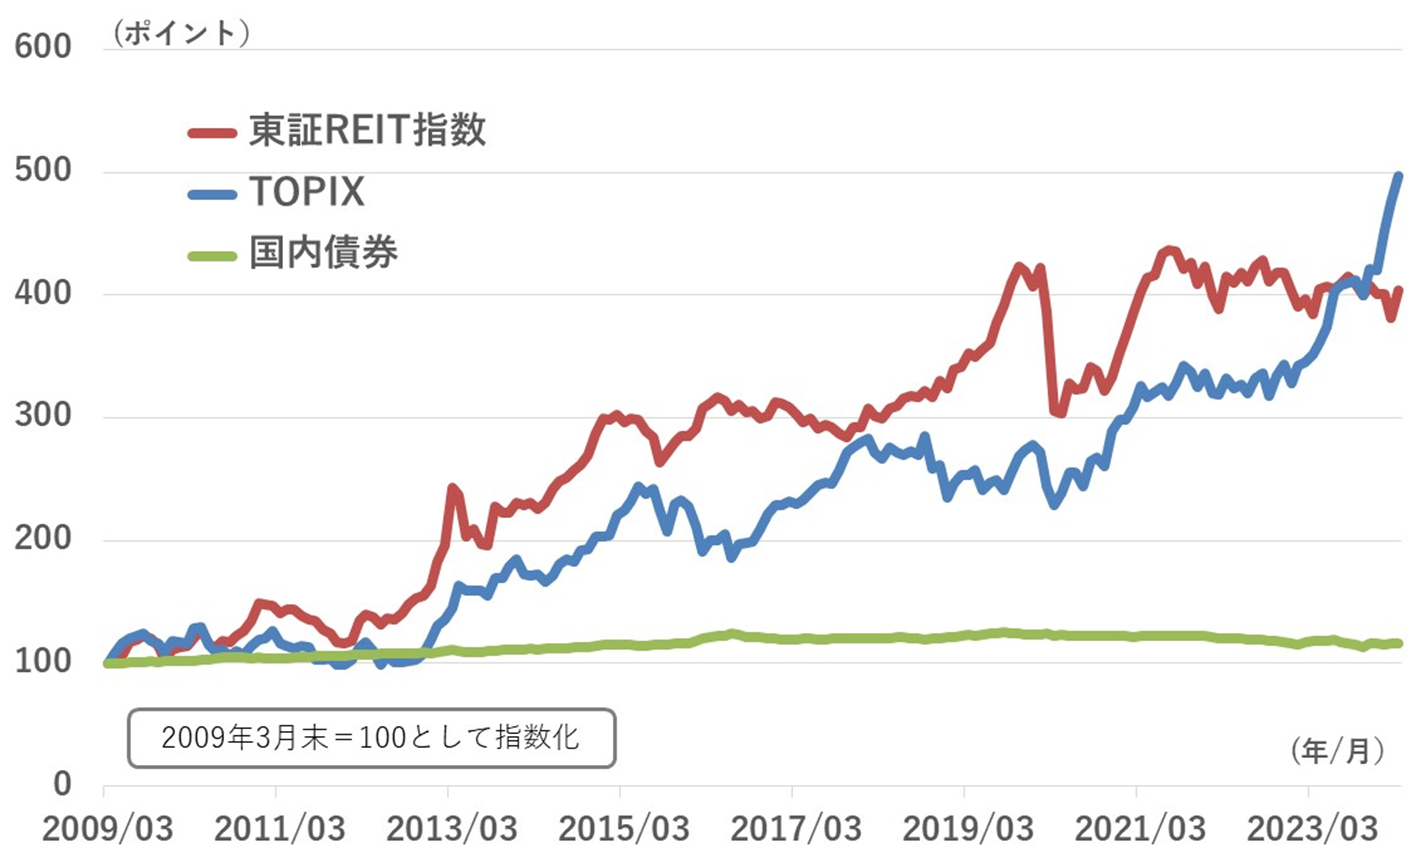 東証REIT指数のパフォーマンス推移グラフ